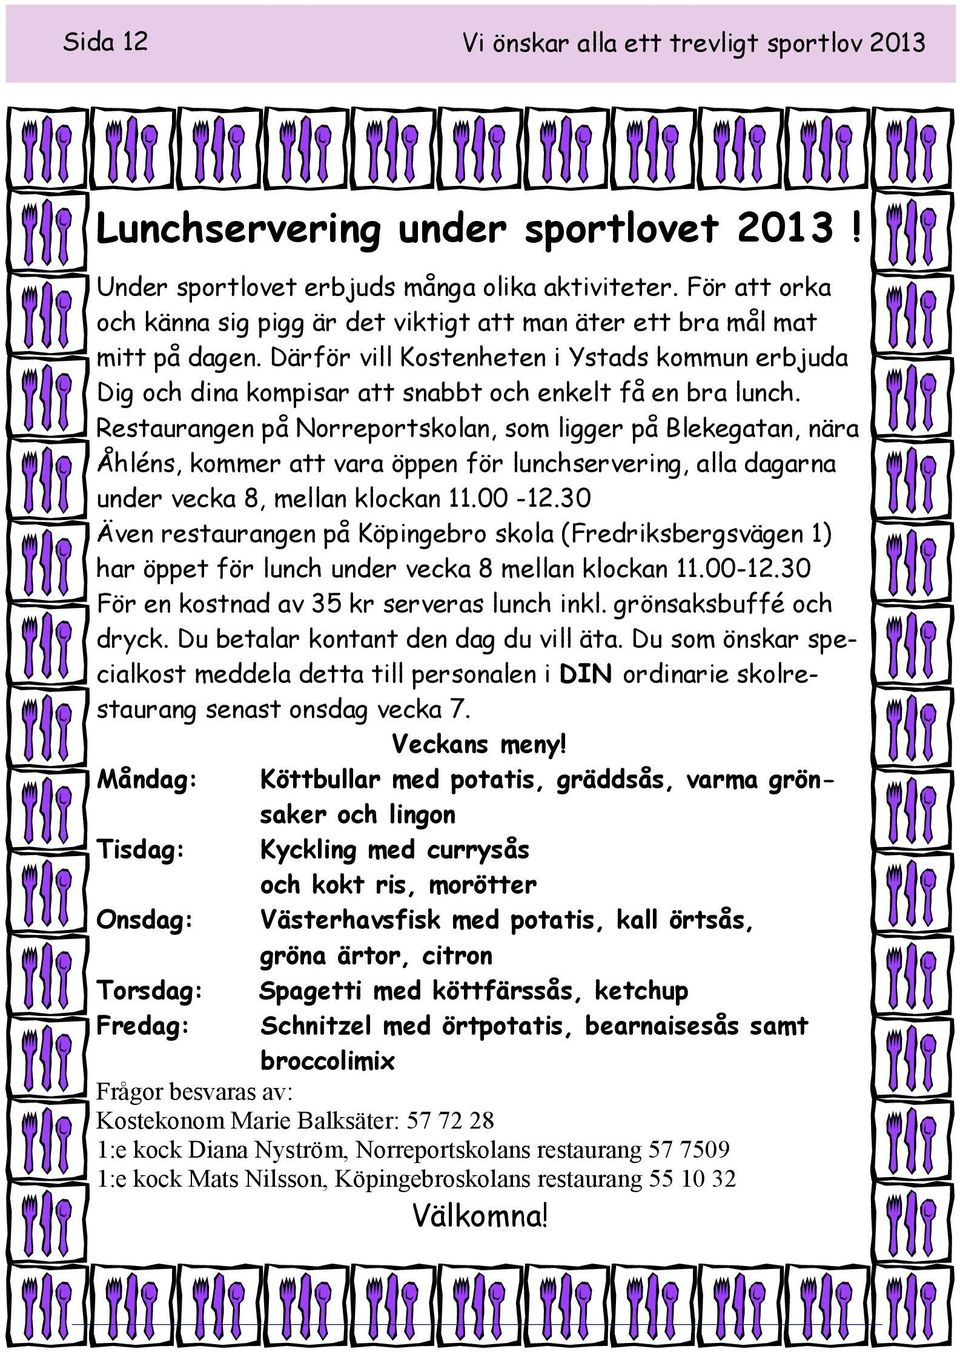 Restaurangen på Norreportskolan, som ligger på Blekegatan, nära Åhléns, kommer att vara öppen för lunchservering, alla dagarna under vecka 8, mellan klockan 11.00-12.